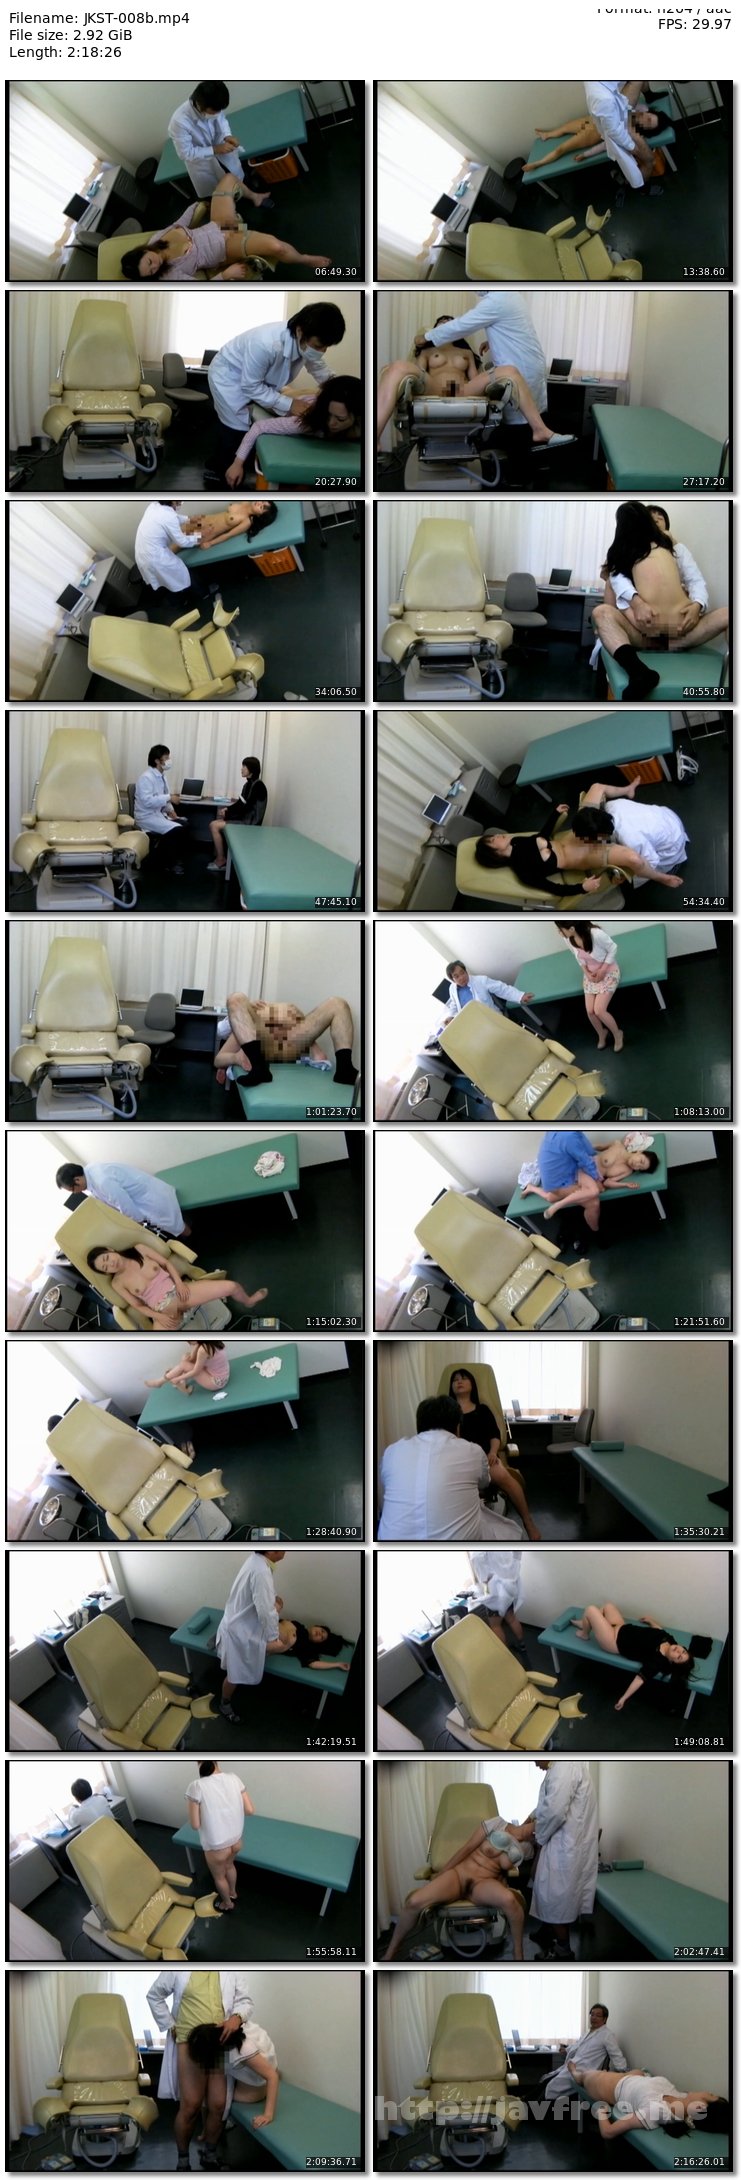 [JKST-008] 五十路 産婦人科レ○プ 睡眠薬を飲ませ寝バック中出しする医師 盗撮映像